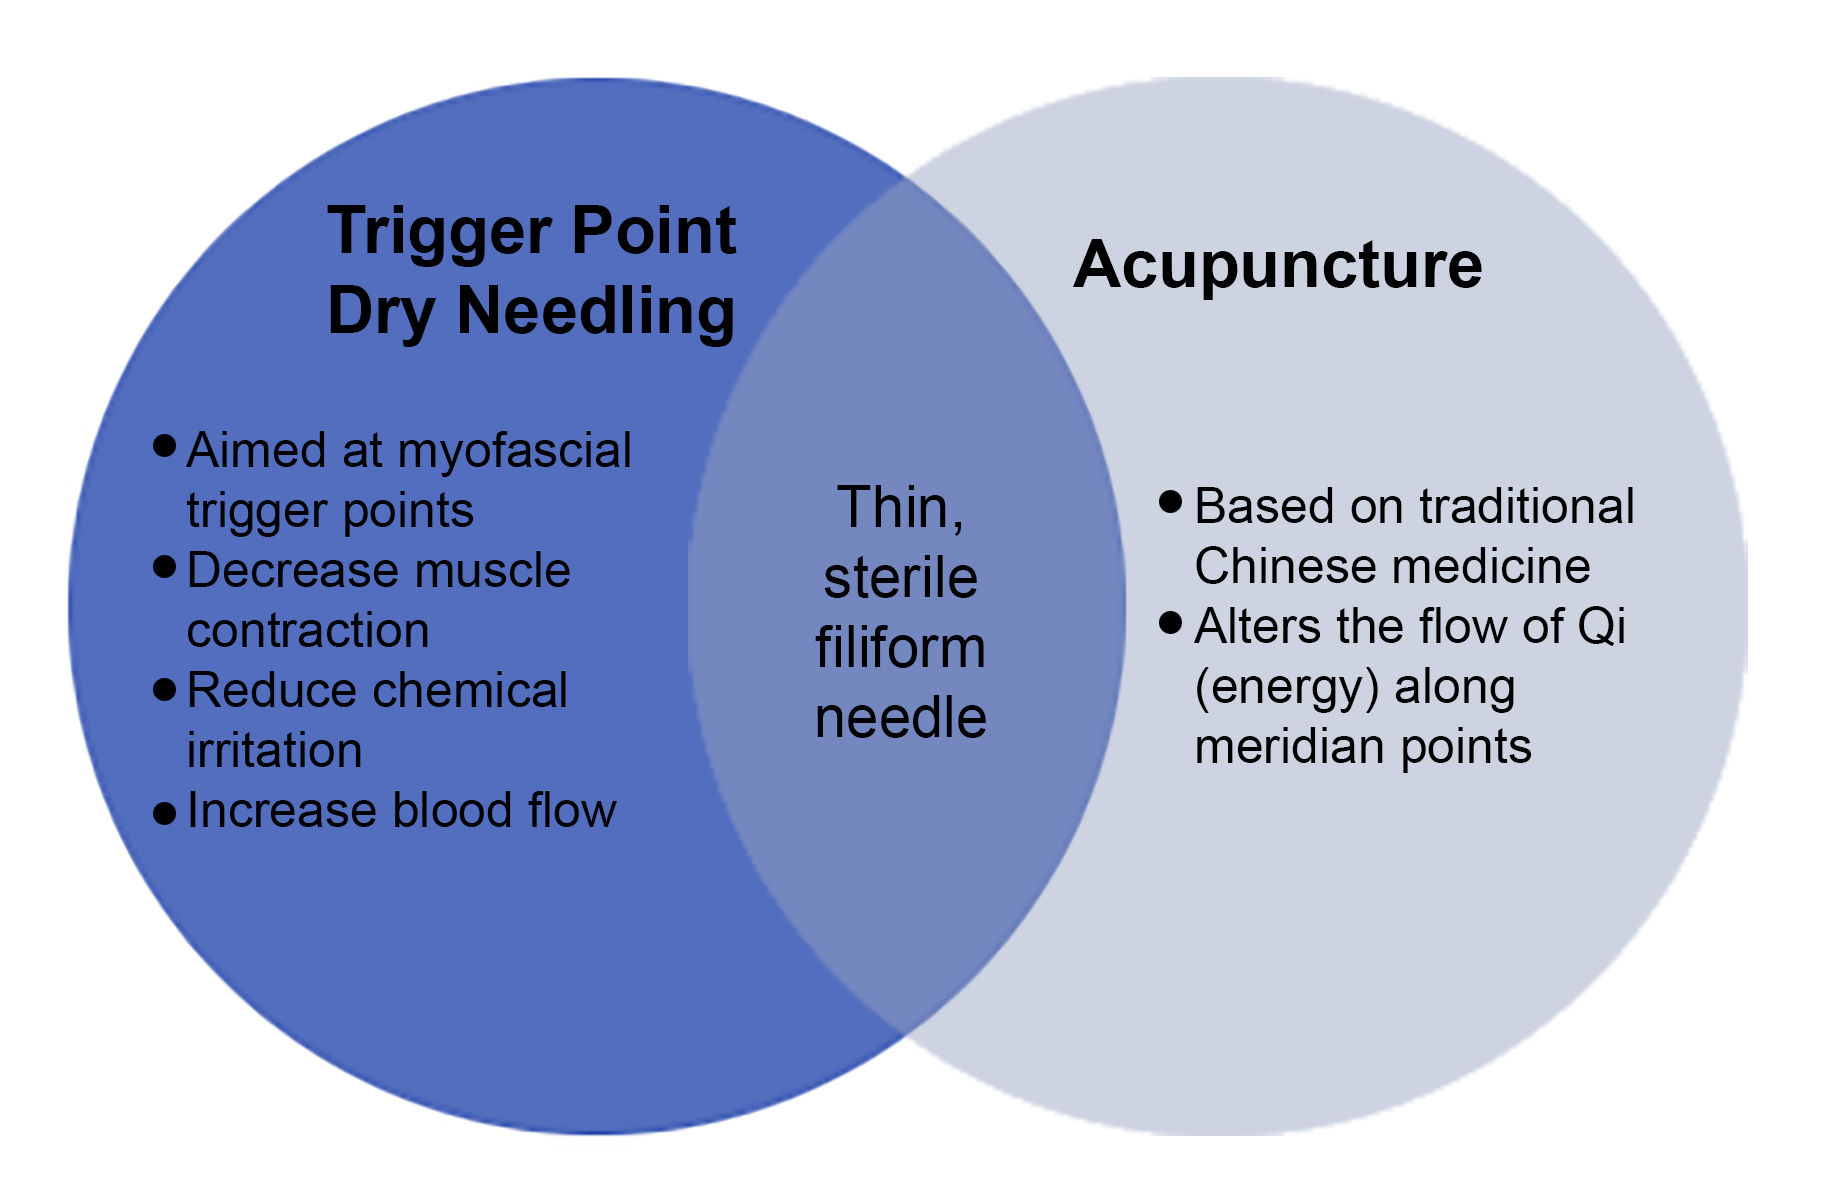 dry needling vs acupuncture venn diagram